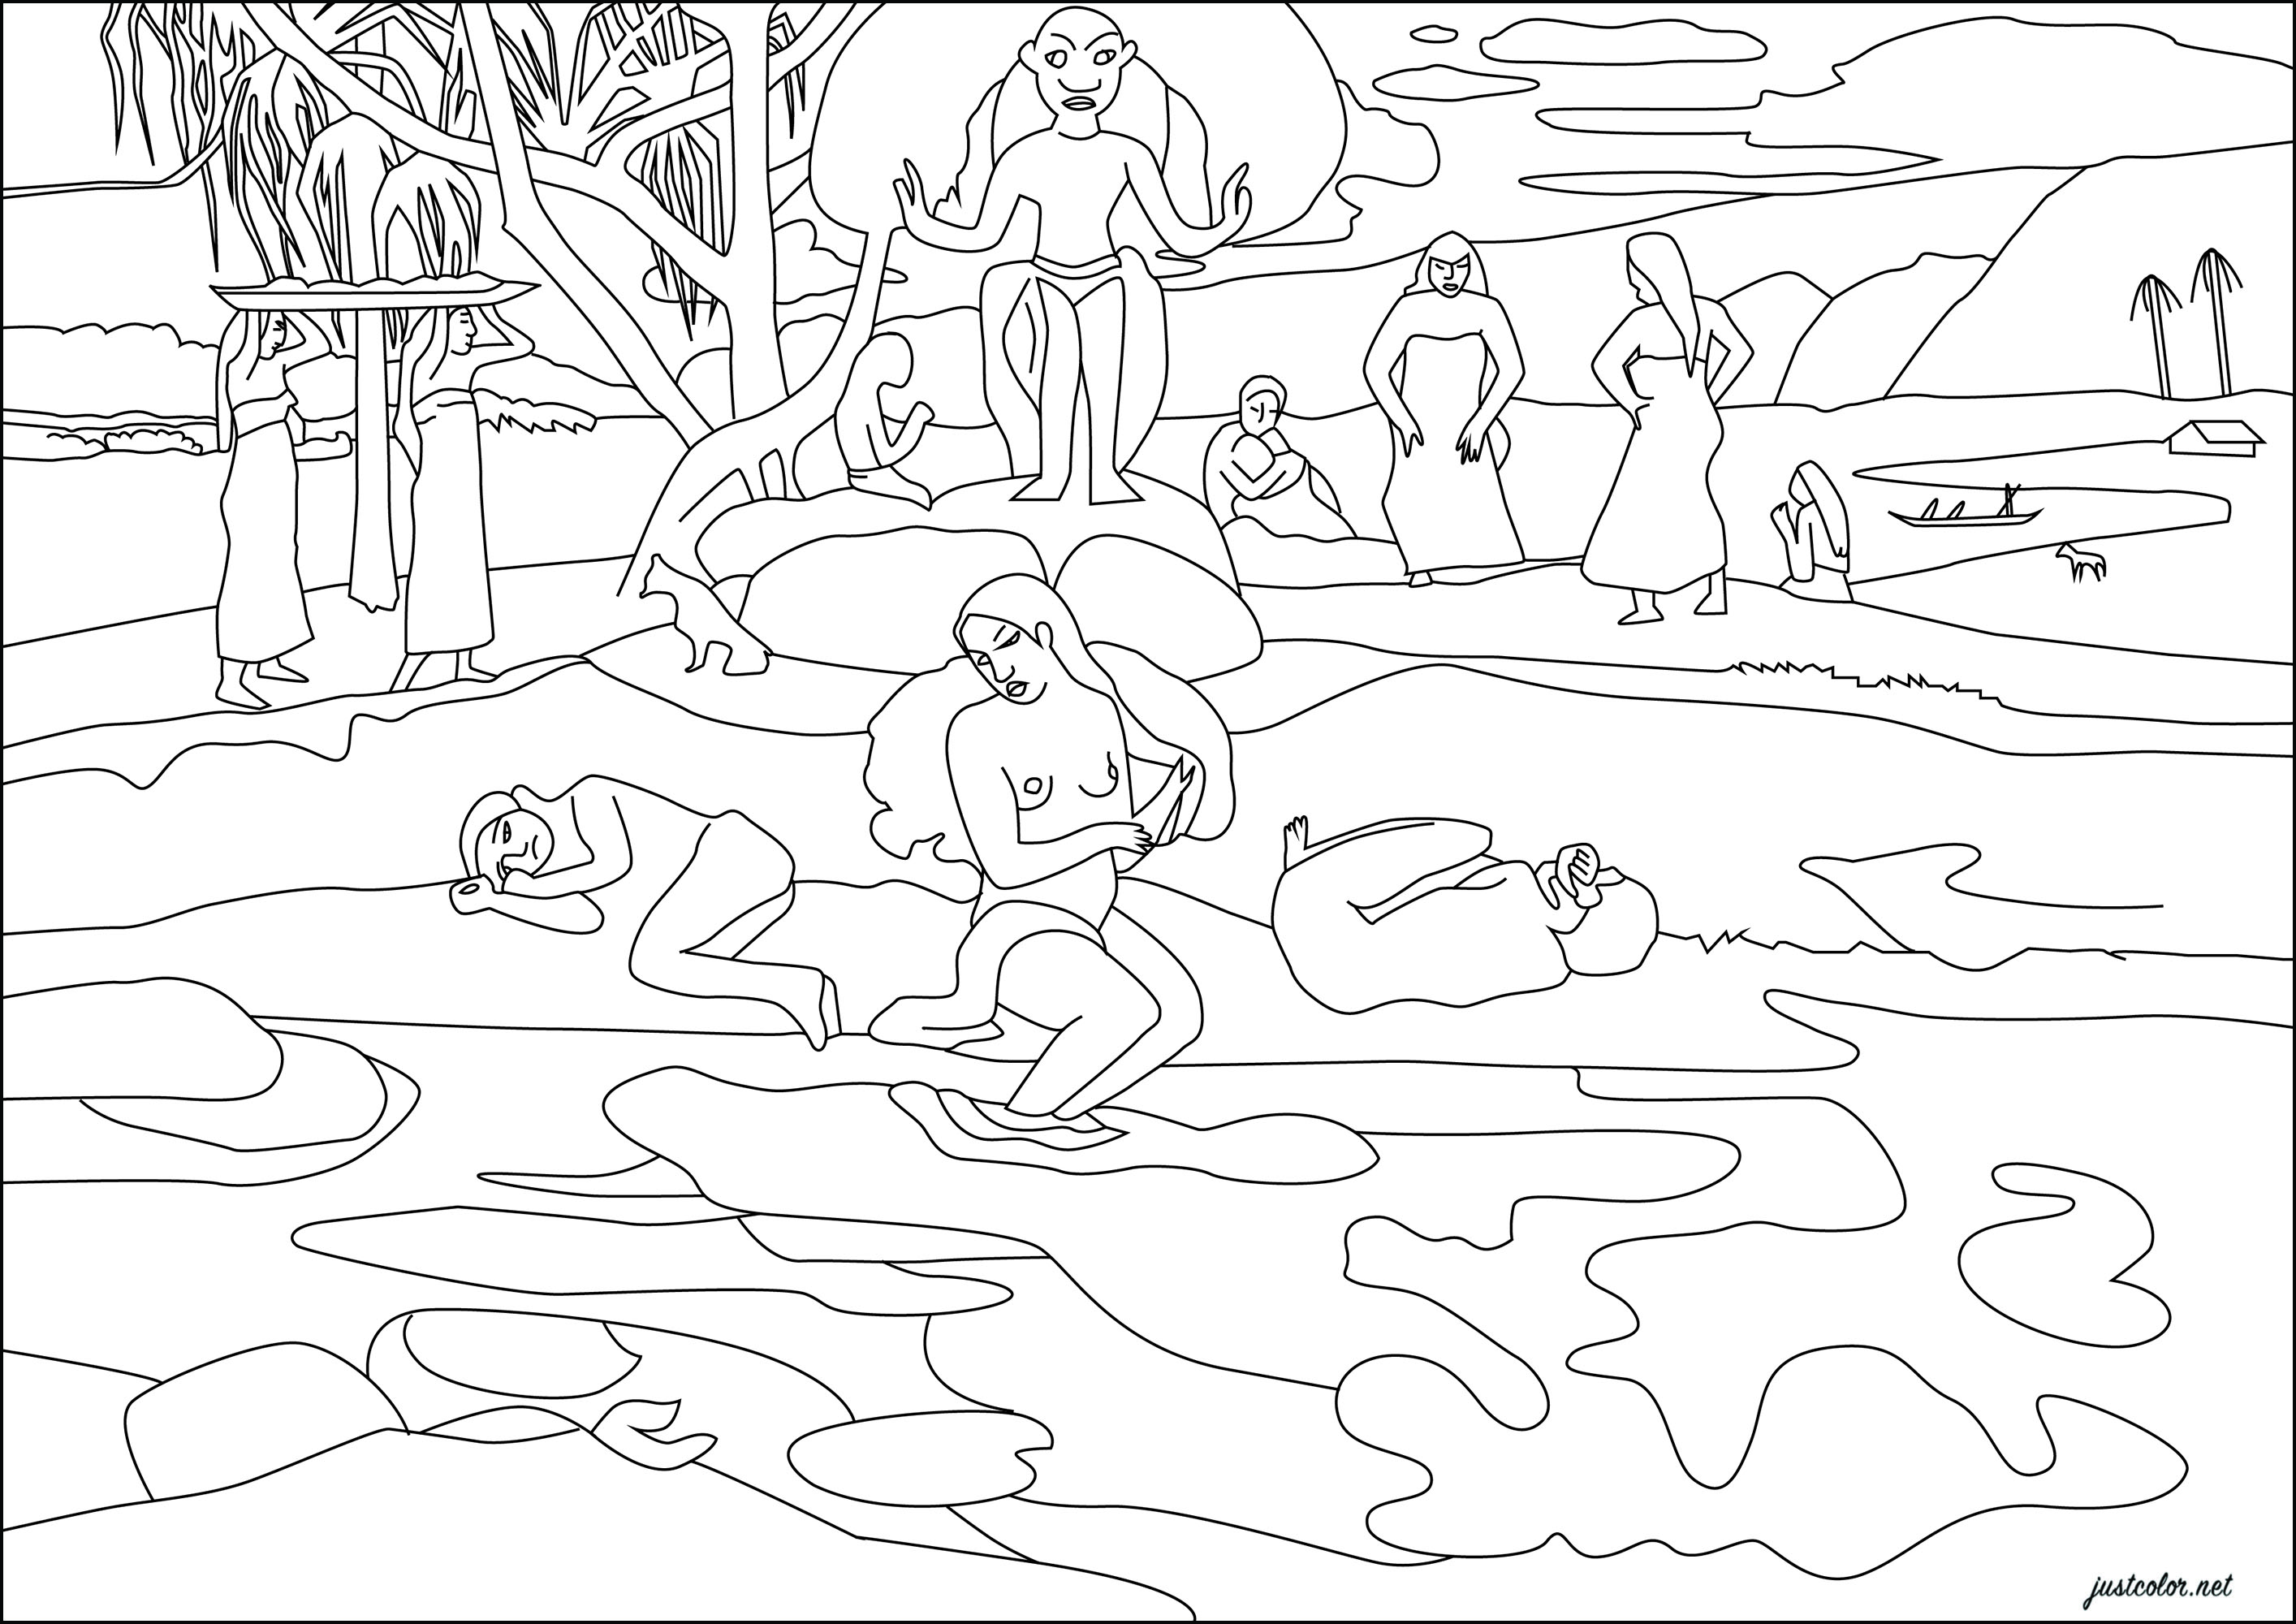 Paul Gauguin : Mahana no atua (Jour de Dieu) (1894). Dans ce tableau, Gauguin présente un paradis tropical où une divinité règne sur des figures symboliques se promenant sur un remblai, entourées de bassins d'eau aux couleurs vives.Cette œuvre, produite à Paris après son premier voyage à Tahiti, témoigne de l'abstraction et de l'avant-gardisme de l'artiste, mêlant fantaisie et souvenirs dans une composition psychédélique, Artiste : Gaelle Picard